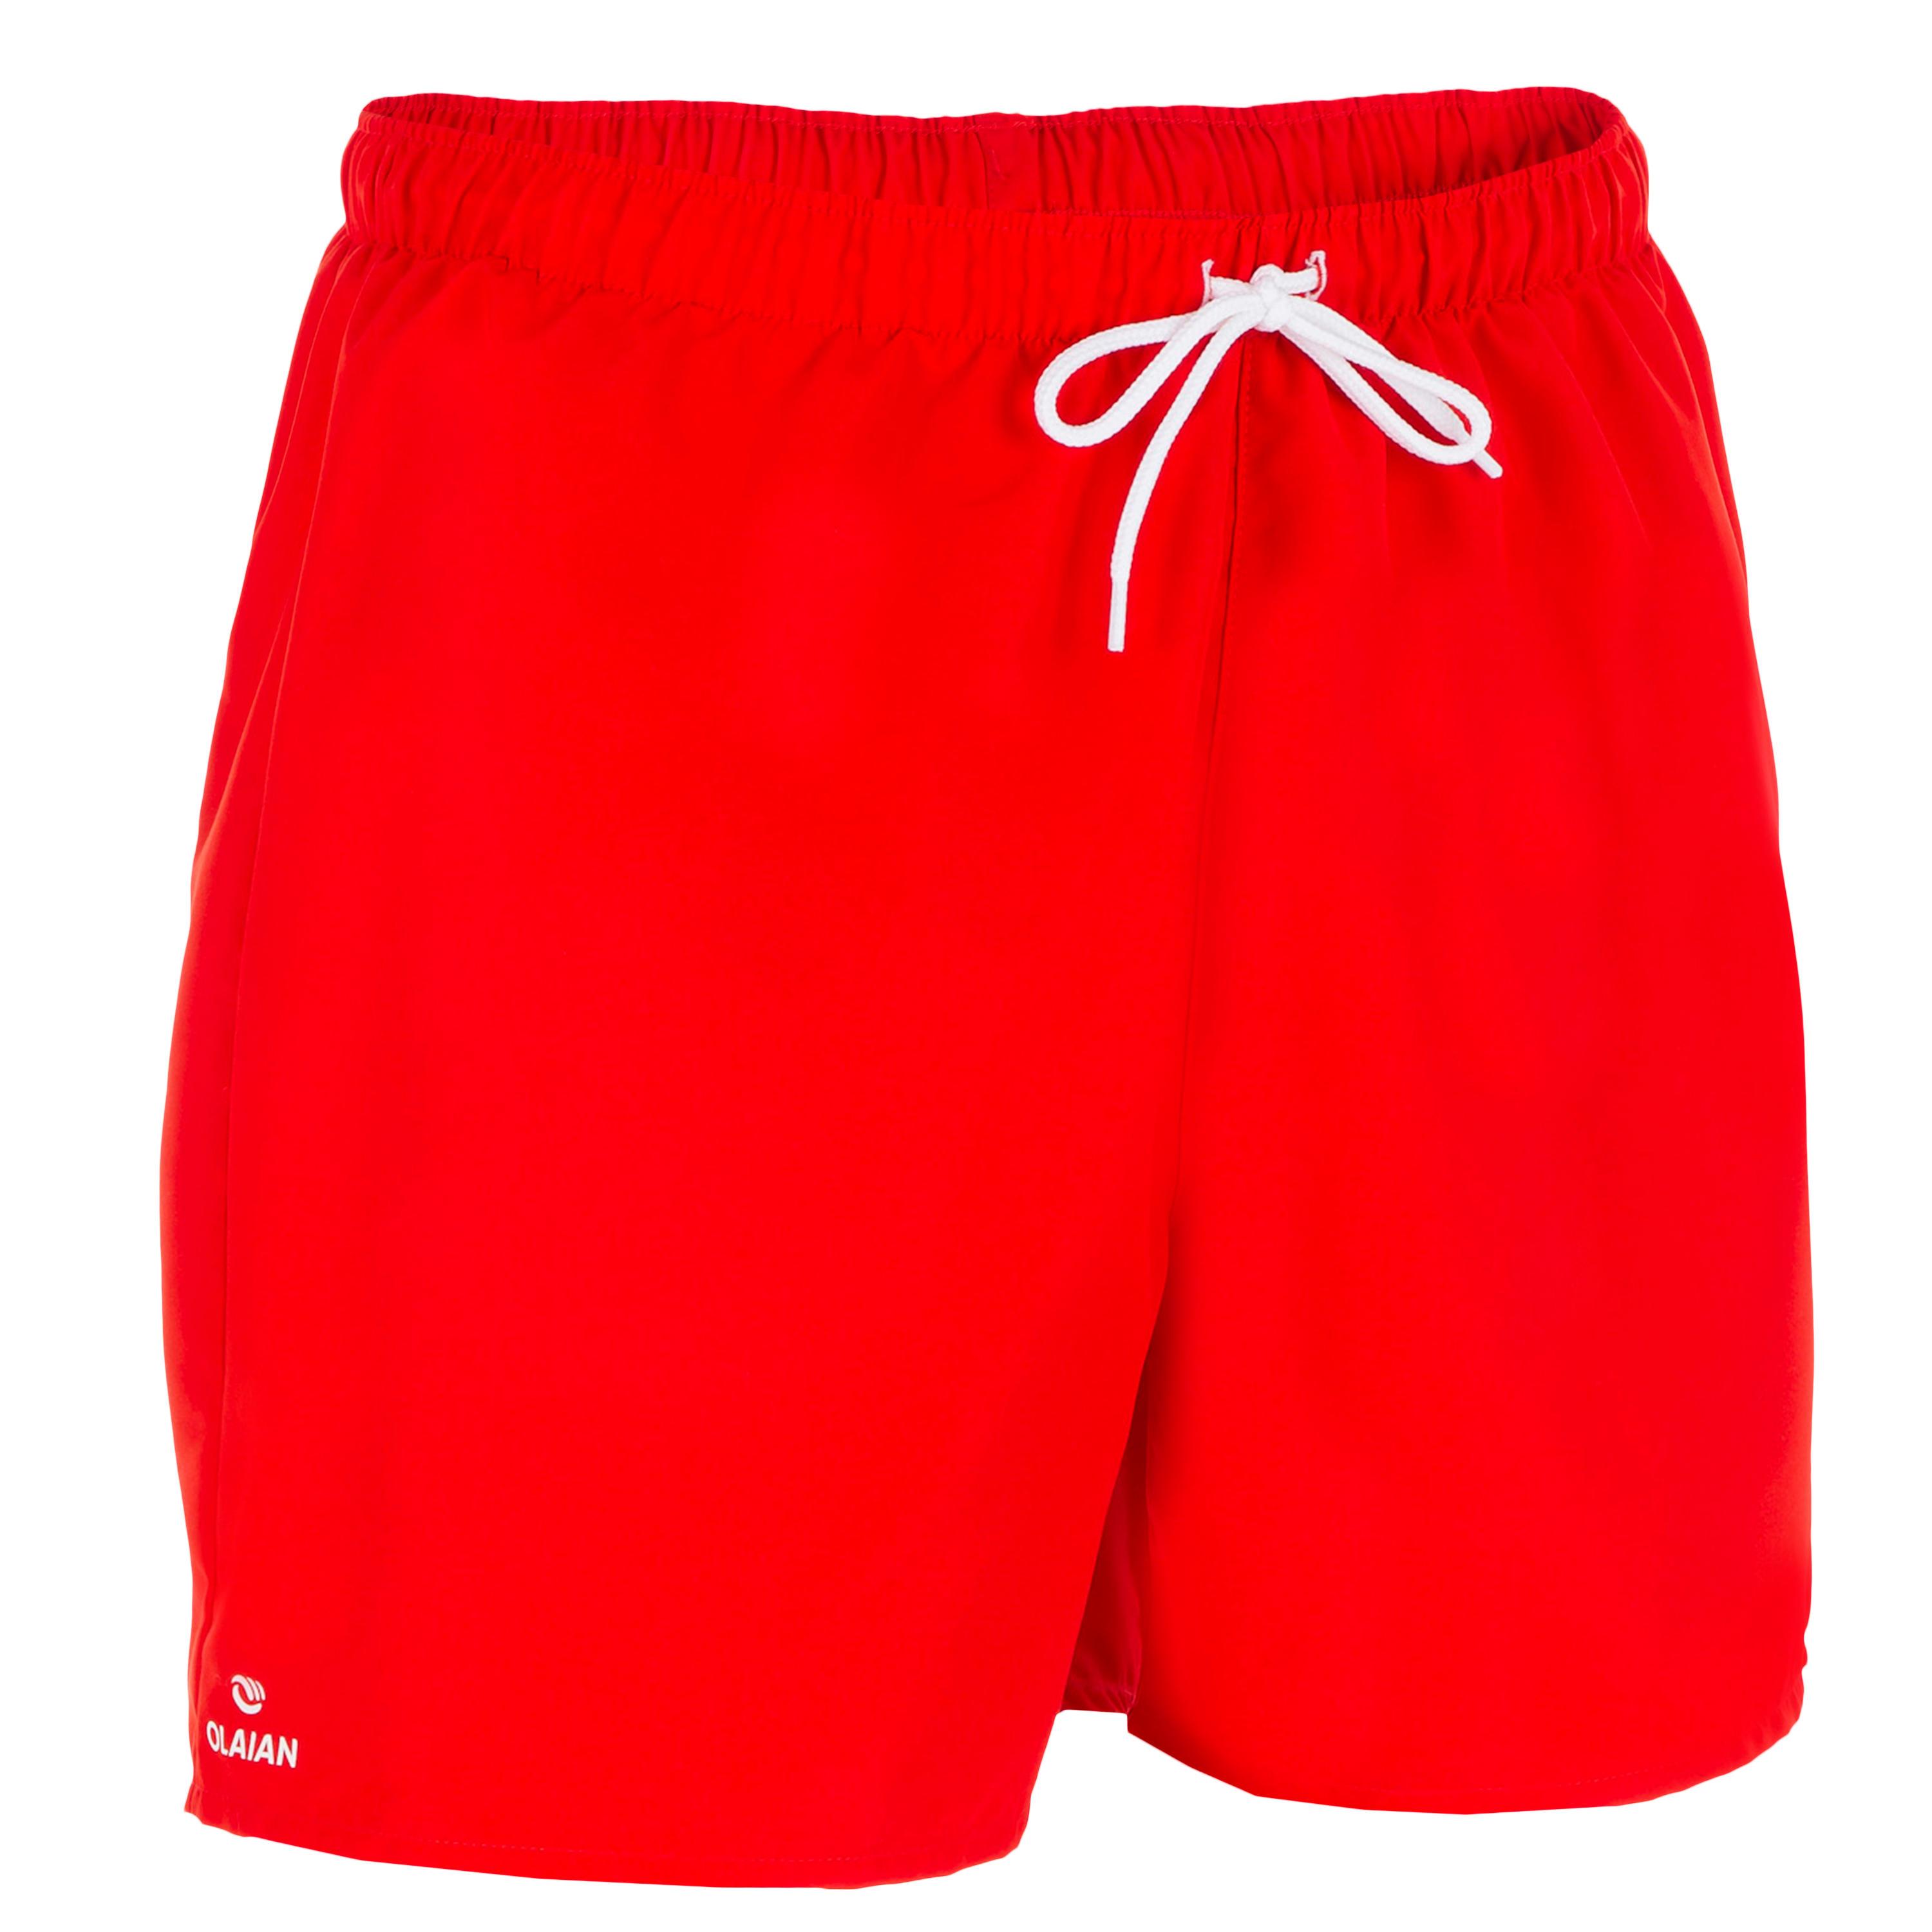 [ด่วน!! โปรโมชั่นมีจำนวนจำกัด]กางเกงชายหาดขาสั้นรุ่น HENDAIA (สีแดง NT RED)